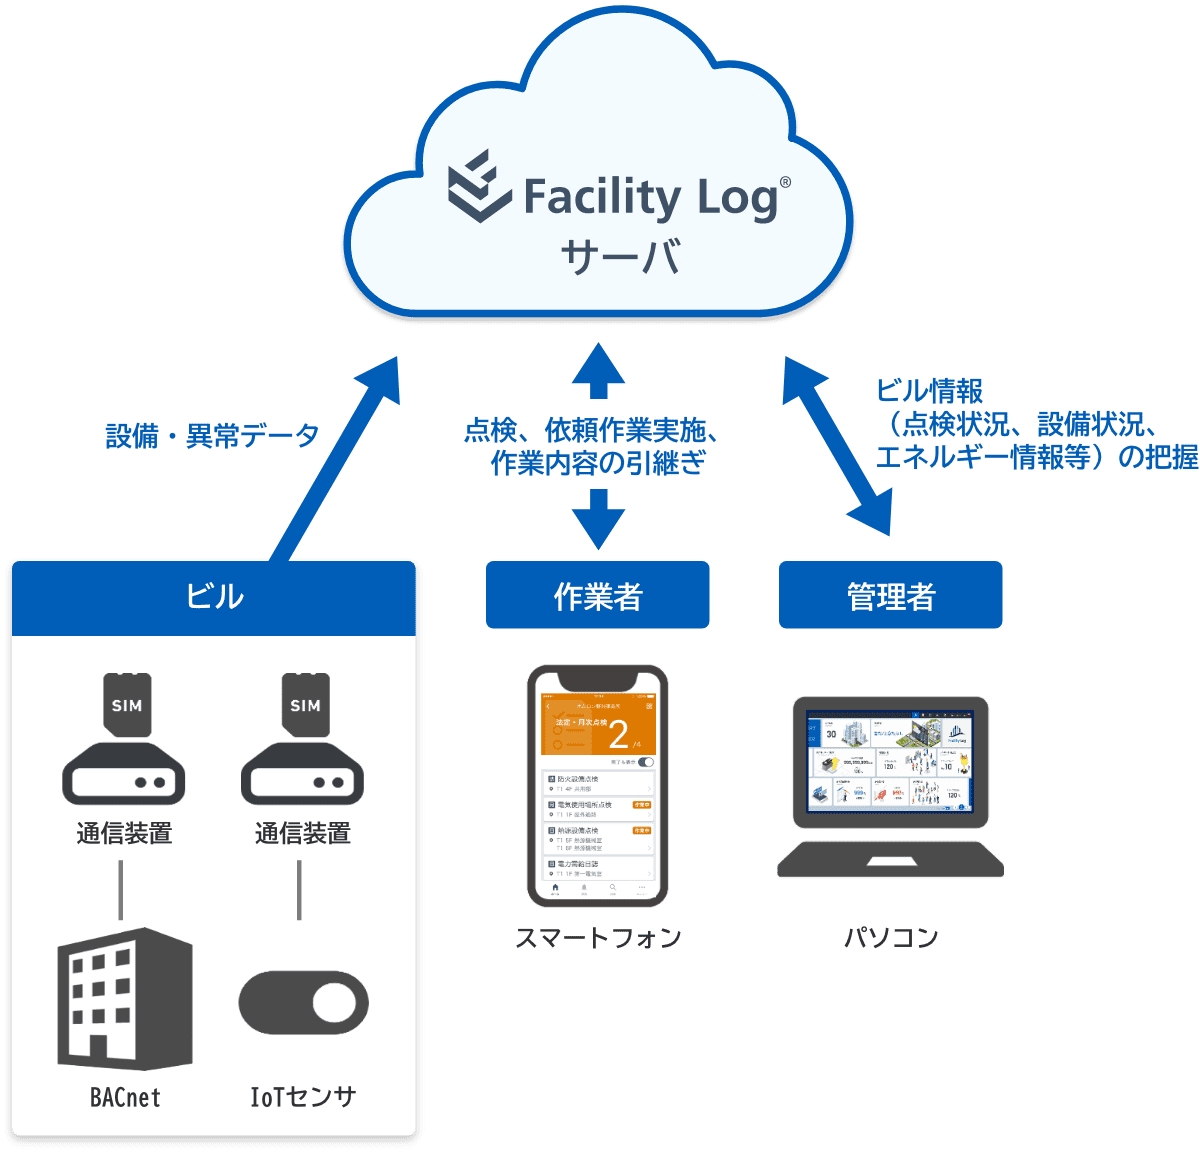 （ビル）通信装置-BACnet、通信装置-IoTセンサが設備・異常データをFacility Log®サーバ へ。（作業者）スマートフォンが点検、依頼作業実施、作業内容の引継ぎをFacility Log®サーバ へ。（管理者）パソコンがビル情報（点検状況、設備状況、エネルギー情報等）の把握をFacility Log®サーバ へ。